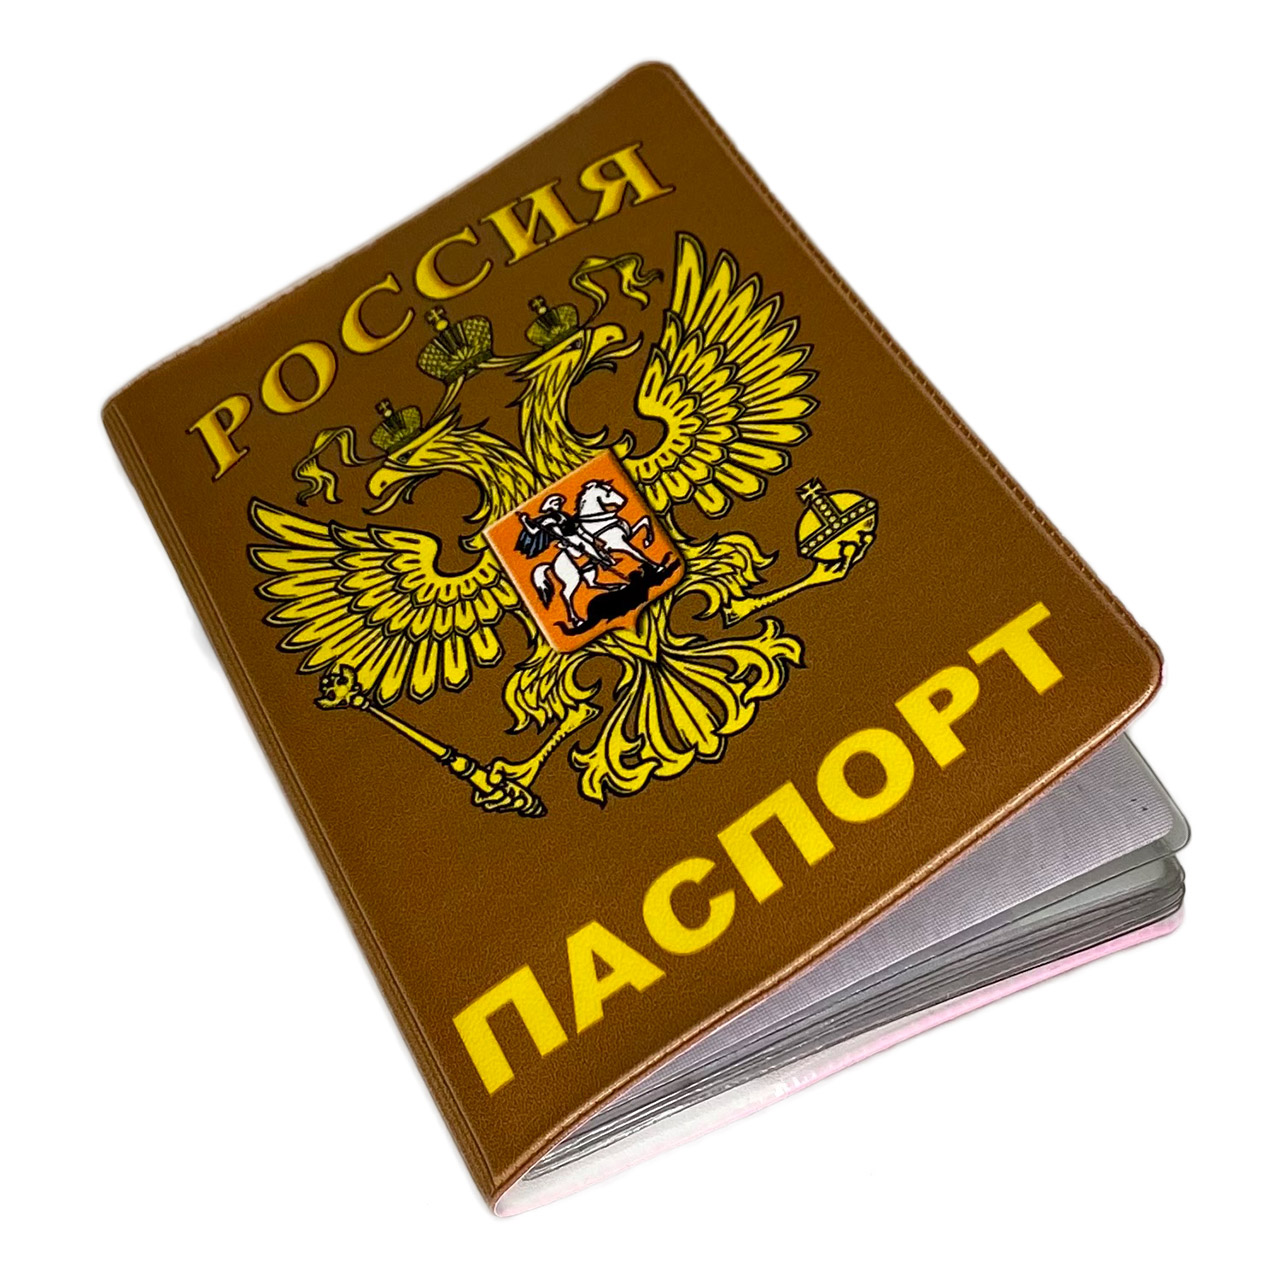 Фото На Паспорт Нижнекамск